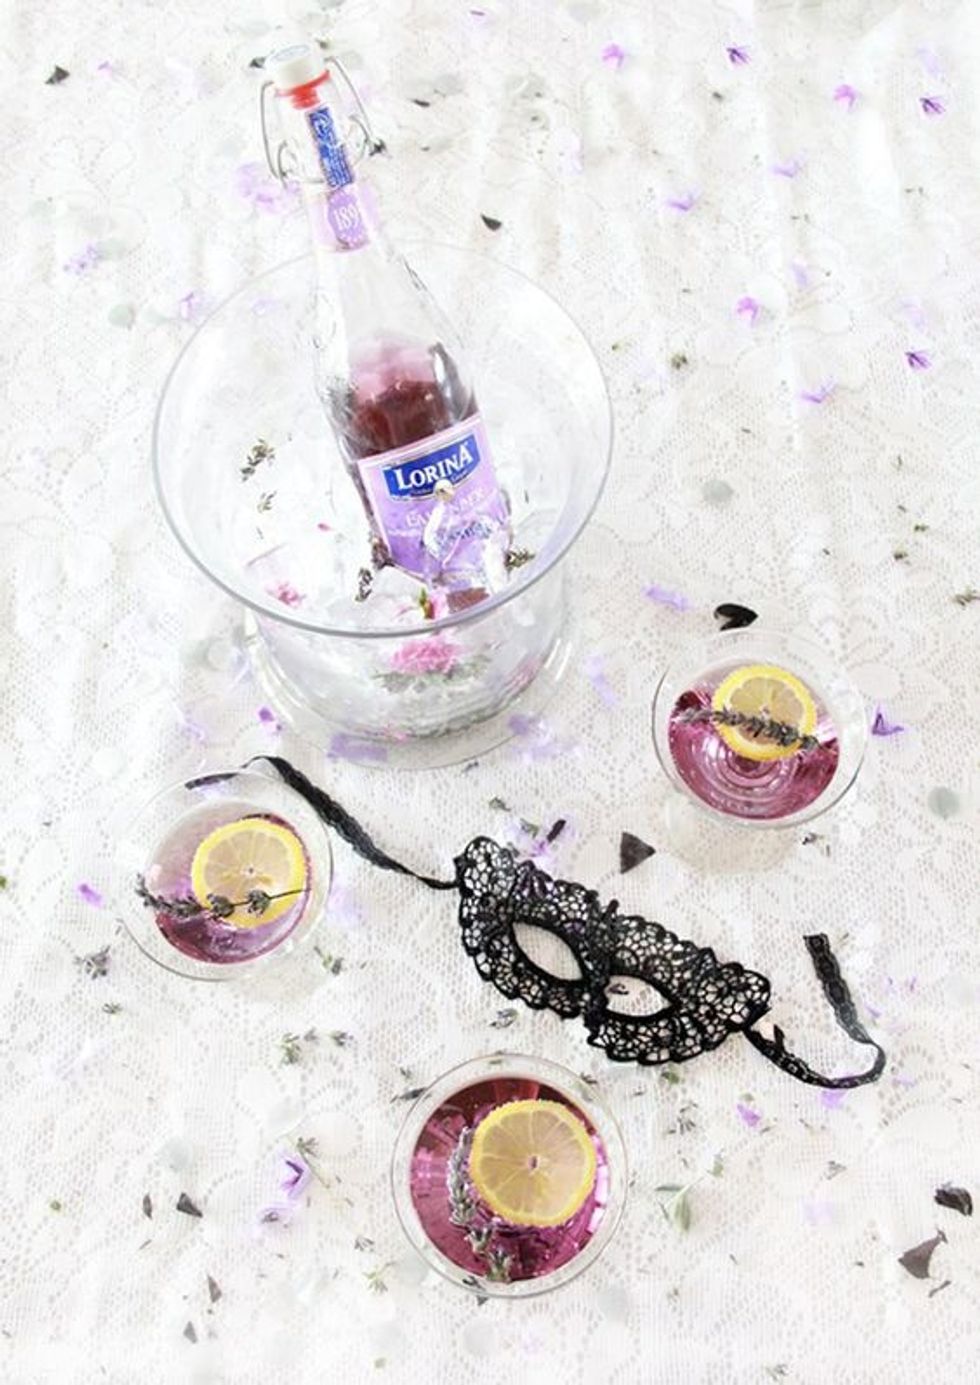 Martini Masquerade with a purple color scheme